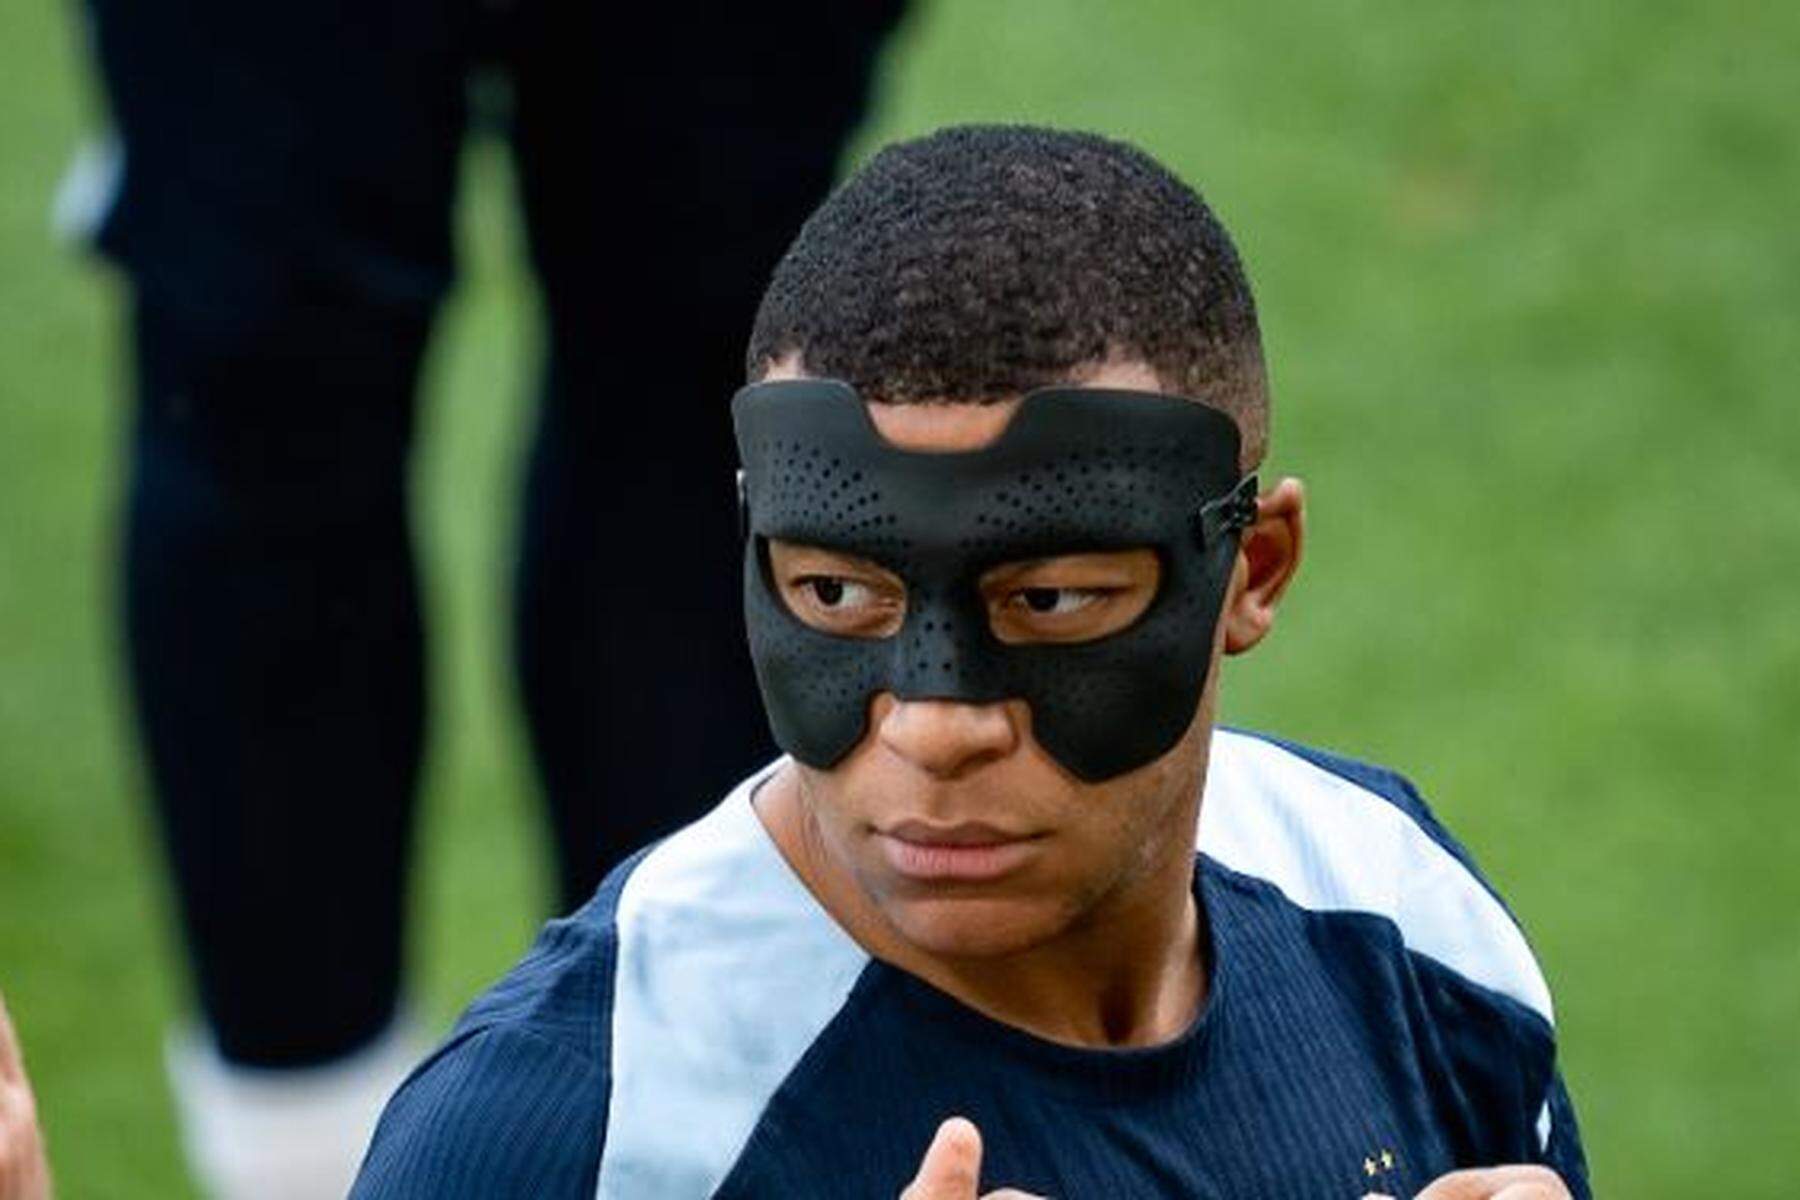 Nach Nasenbeinbruch: Neue Maske für Frankreichs Superstar Kylian Mbappé